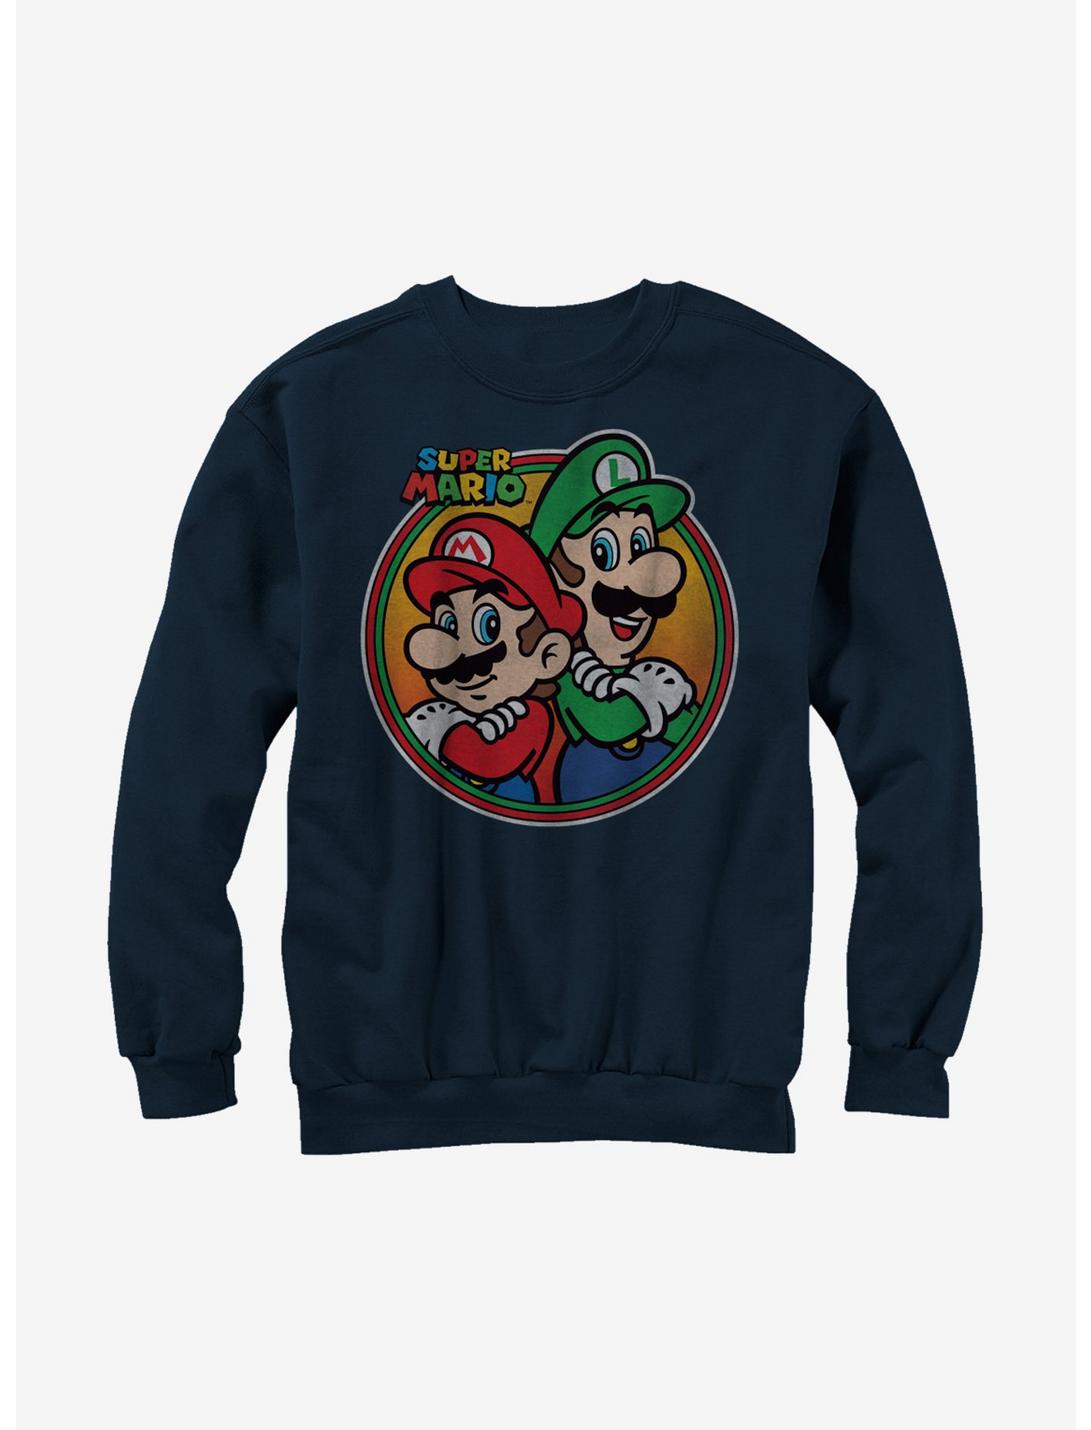 Nintendo Super Mario Bros. Mario & Luigi Back To Back Sweatshirt, NAVY, hi-res